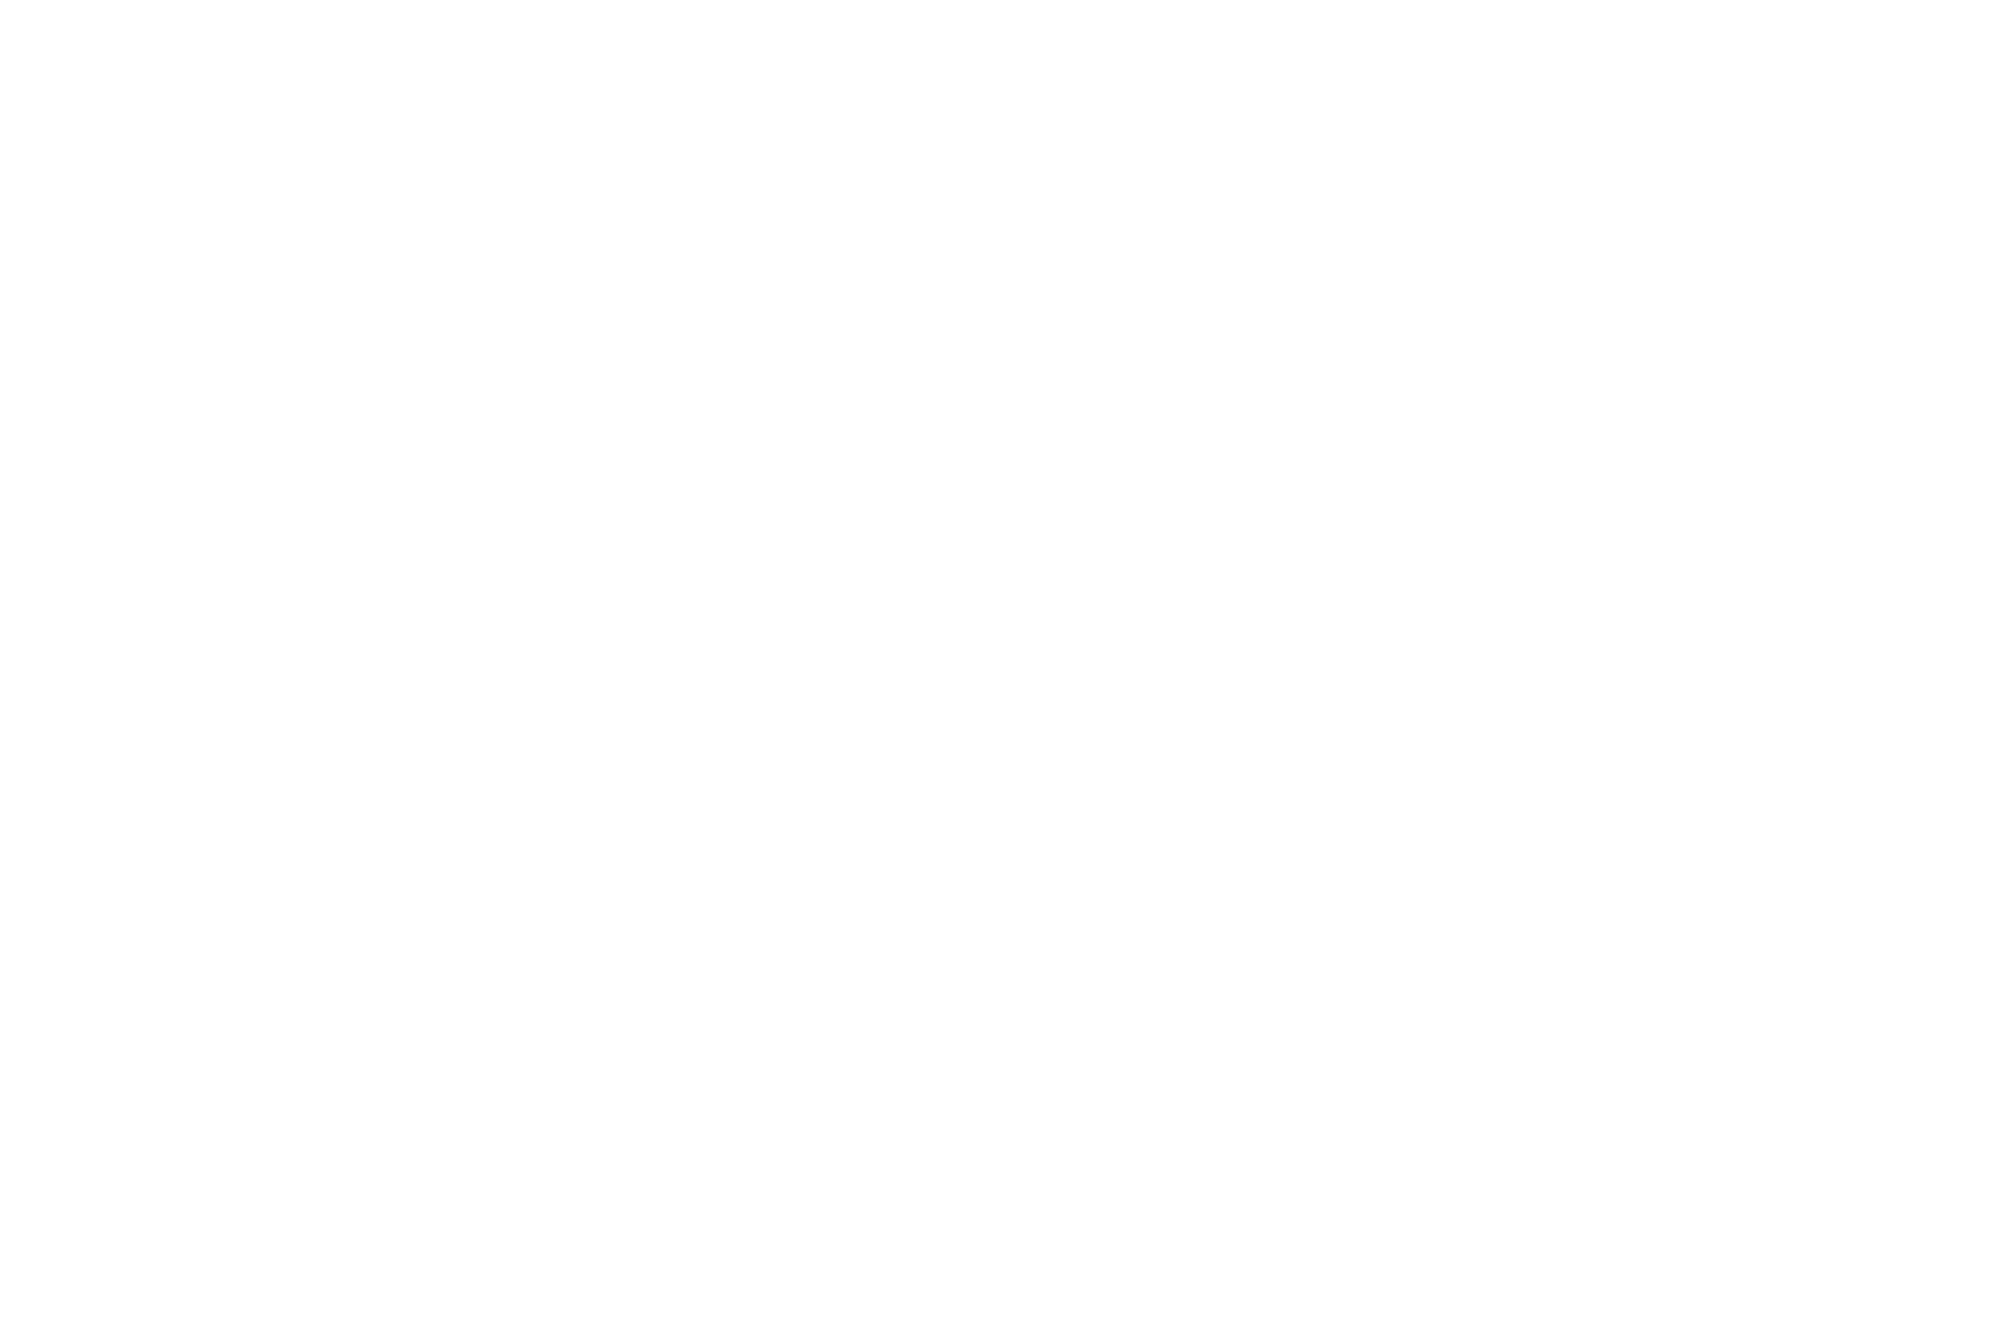 Logotipo oficial de Los hoteles líderes en el mundo Marquis Reforma